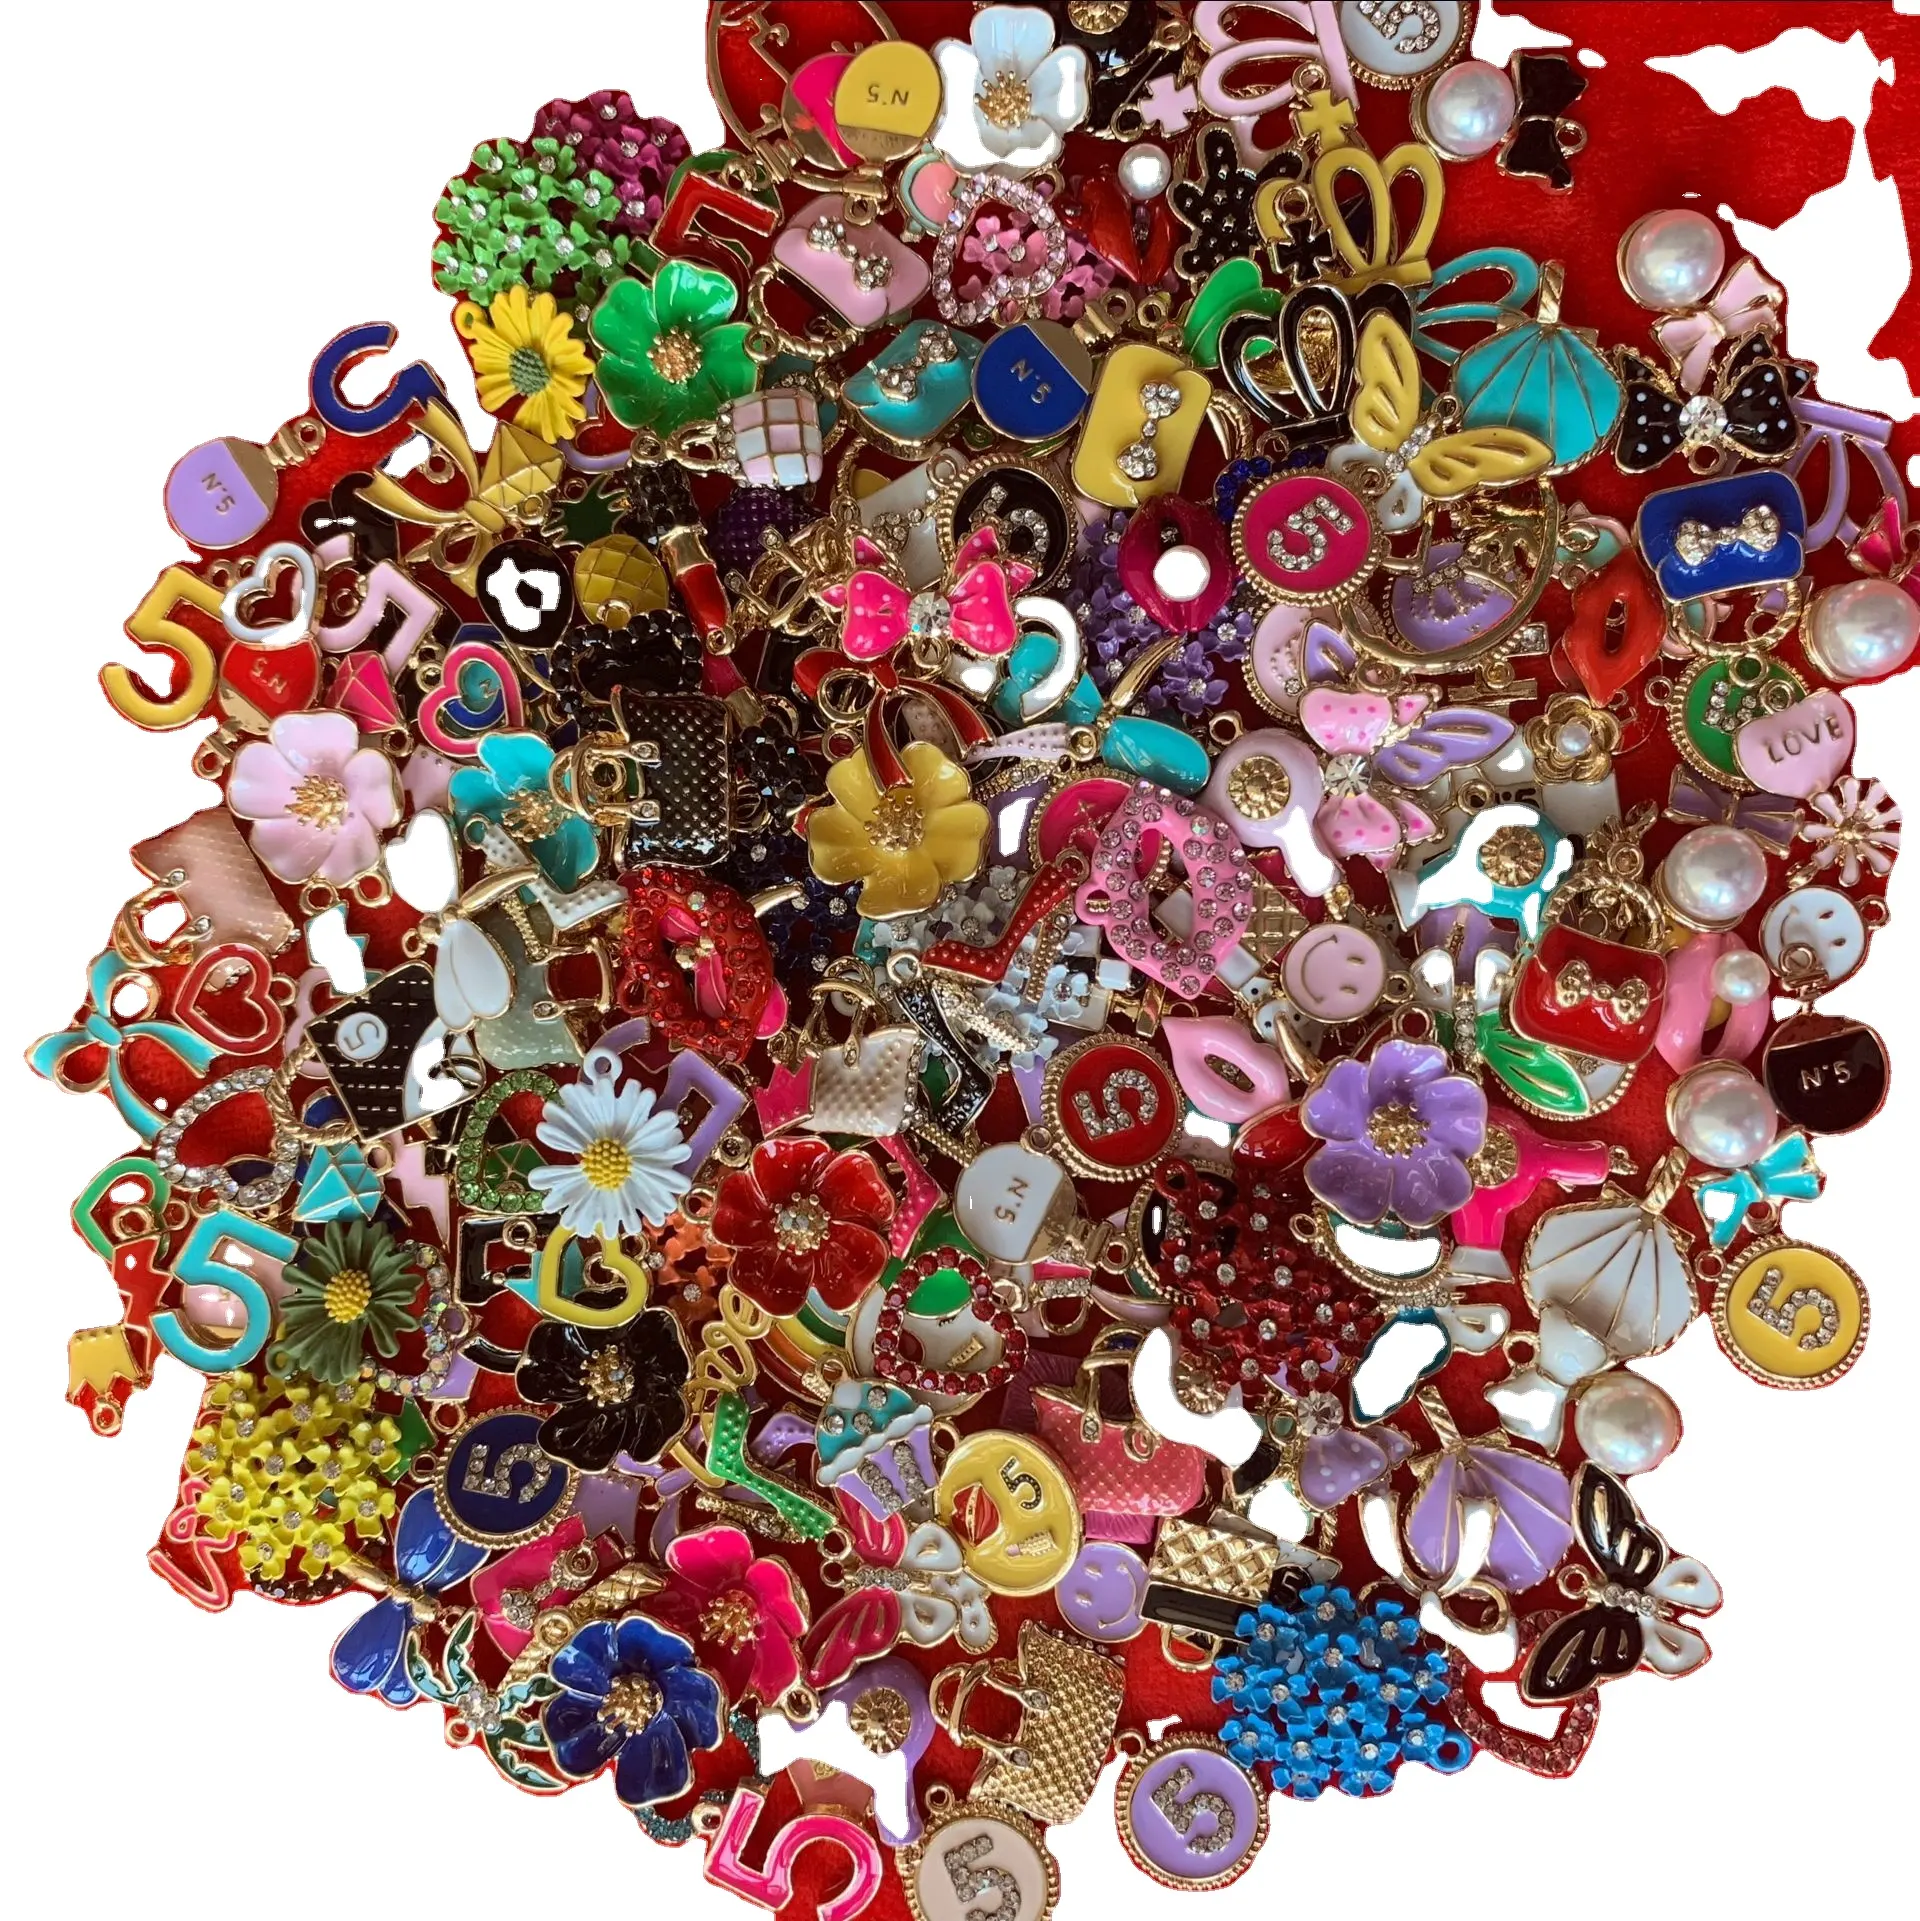 مجموعة مزيج 250 قطعة من دلايات المينا الملونة المختلفة دلايات المجوهرات المعدنية الذهبية الجرلي لأساور أساور دلايات مصمم مزيج